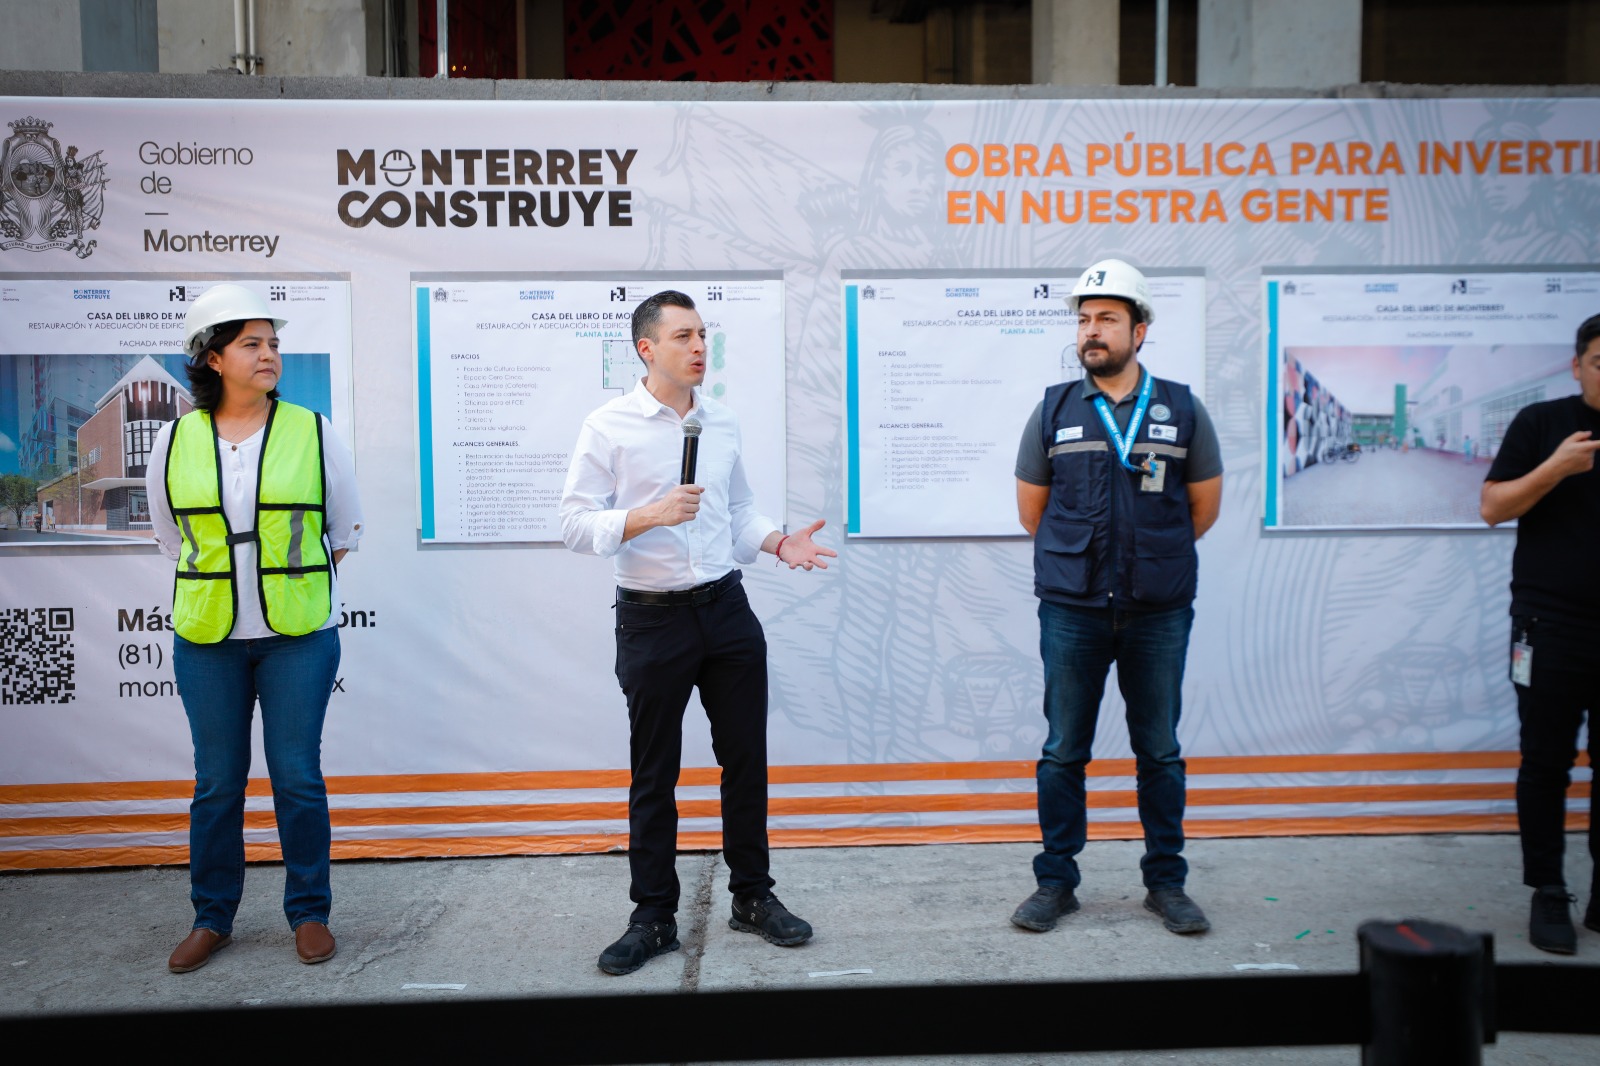 Supervisa Colosio construcción de “La Casa del libro” de Monterrey